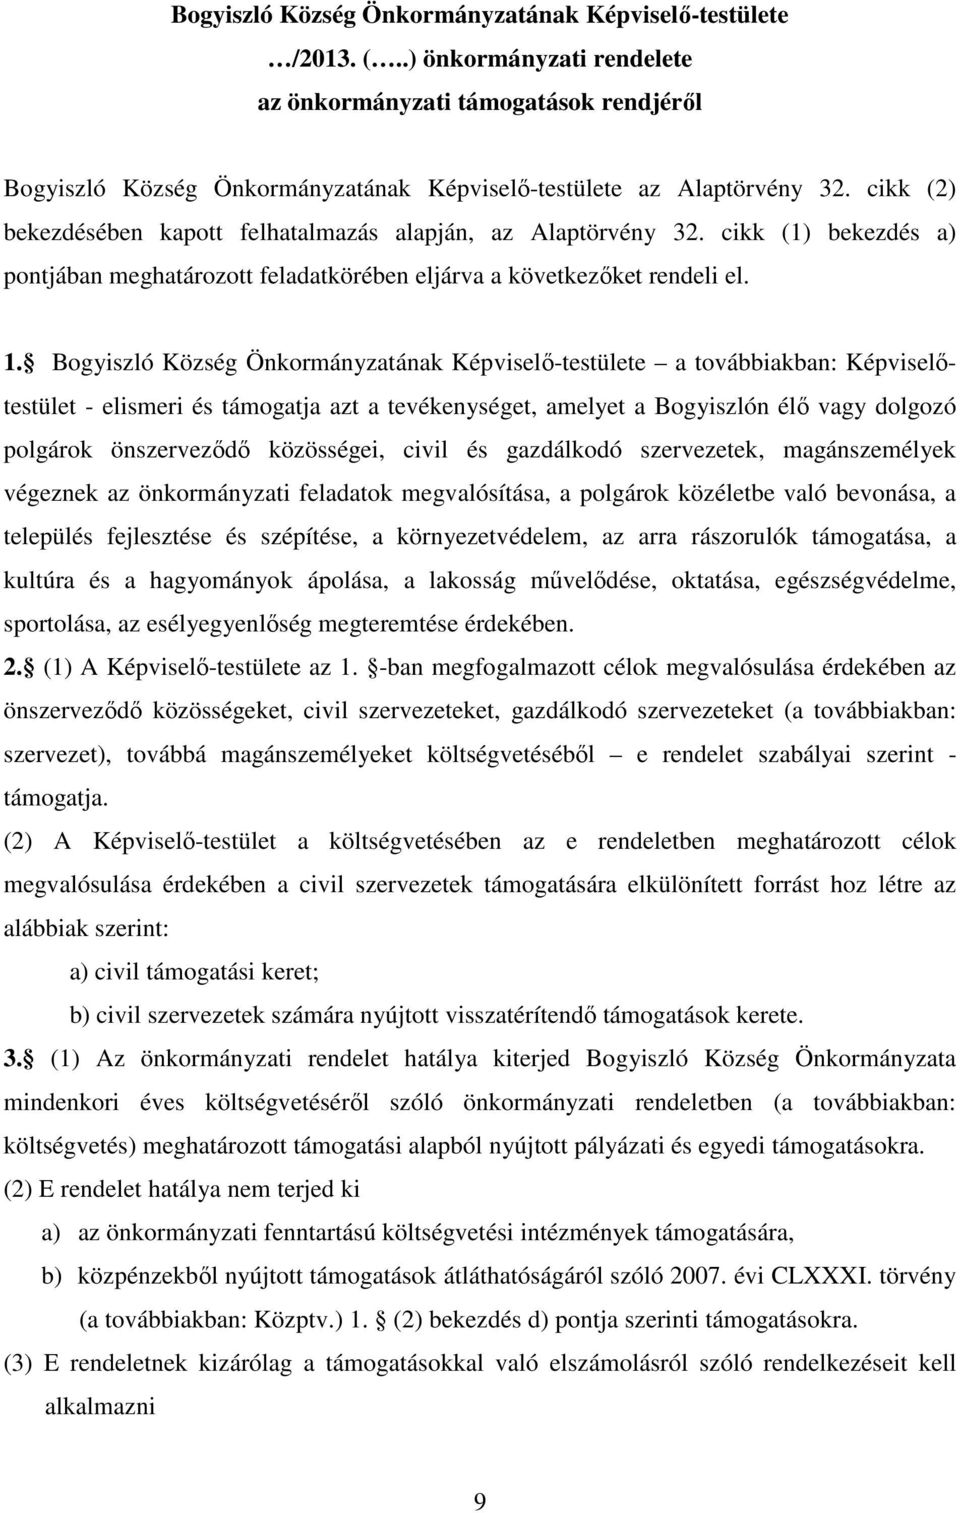 Bogyiszló Község Önkormányzatának Képviselő-testülete a továbbiakban: Képviselőtestület - elismeri és támogatja azt a tevékenységet, amelyet a Bogyiszlón élő vagy dolgozó polgárok önszerveződő